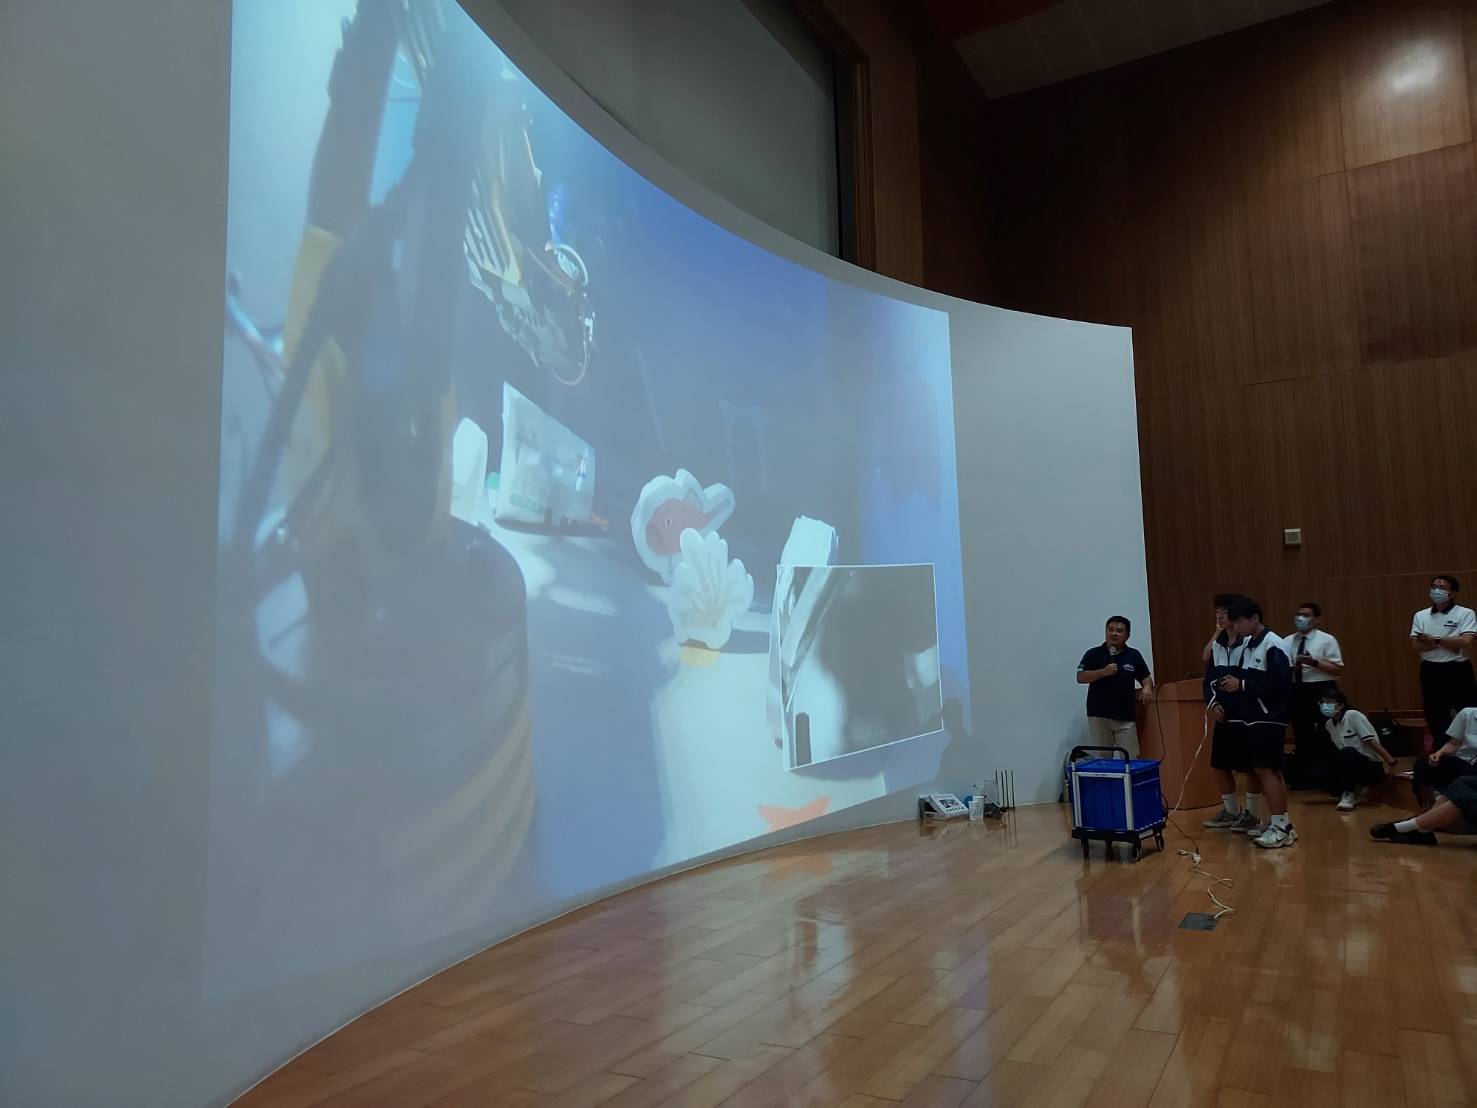 學生體驗操作迷你版ROV機械手臂來夾取海洋垃圾。